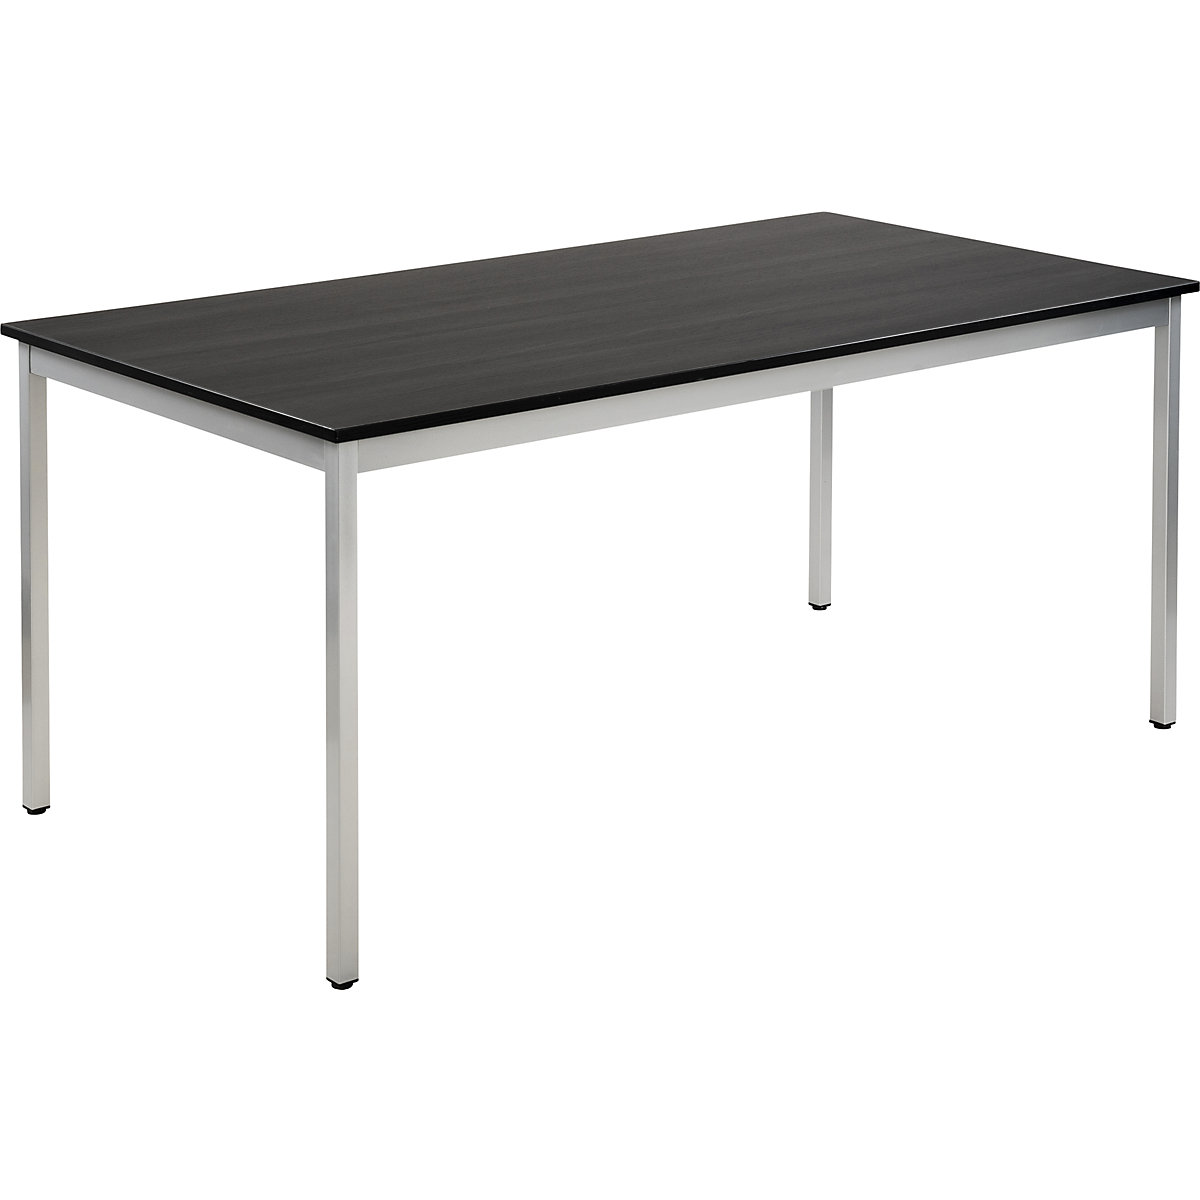 Víceúčelový stůl – eurokraft basic, obdélníkový tvar, v x š x h 740 x 1600 x 800 mm, deska v jasanovém dekoru tmavá šedá, podstavec v barvě bílý hliník-15